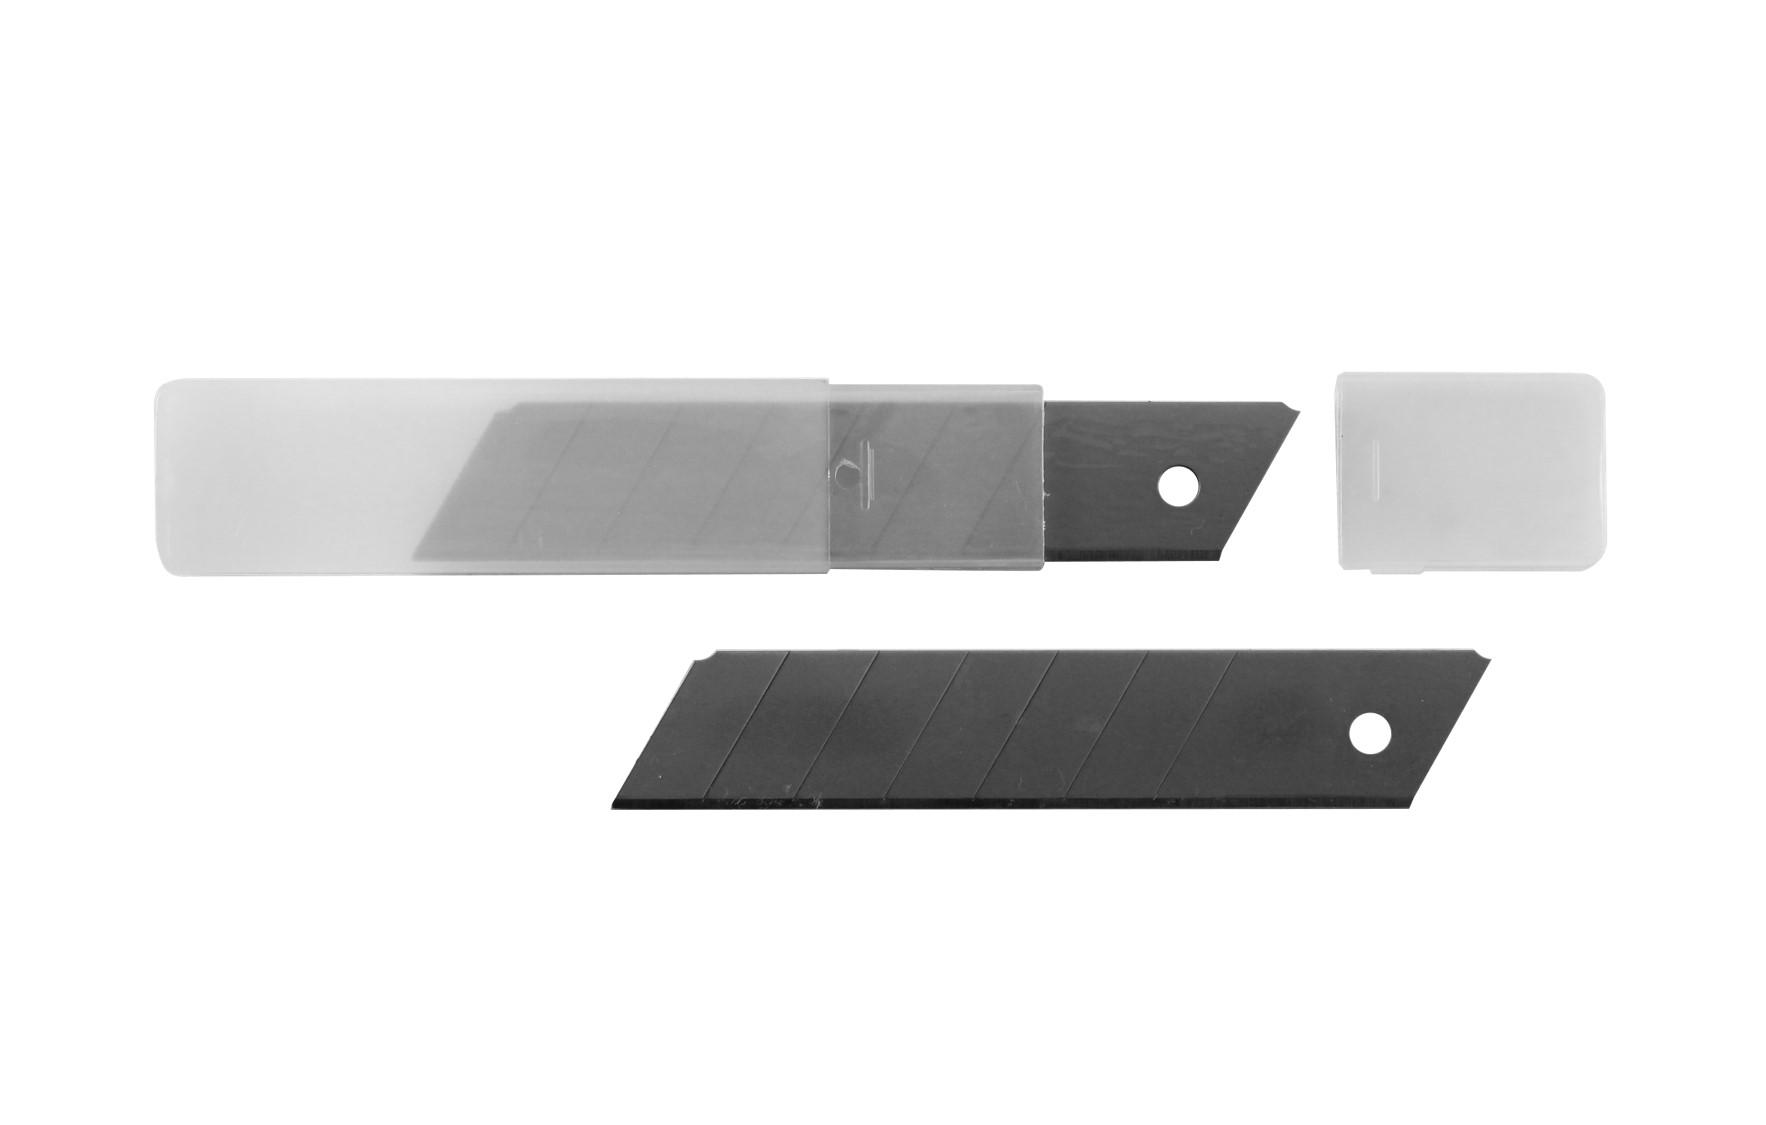 Лезвие для ножа 25 мм. Vira лезвия д/ножей сегментные, с воронением ,18 мм 10шт 831500. Сегментные лезвия для ножей Vira с воронением 18 мм 831500. Сегментные лезвия для ножей Vira с воронением 18 мм 5шт. Vira нож с сегментным лезвием 18 мм.